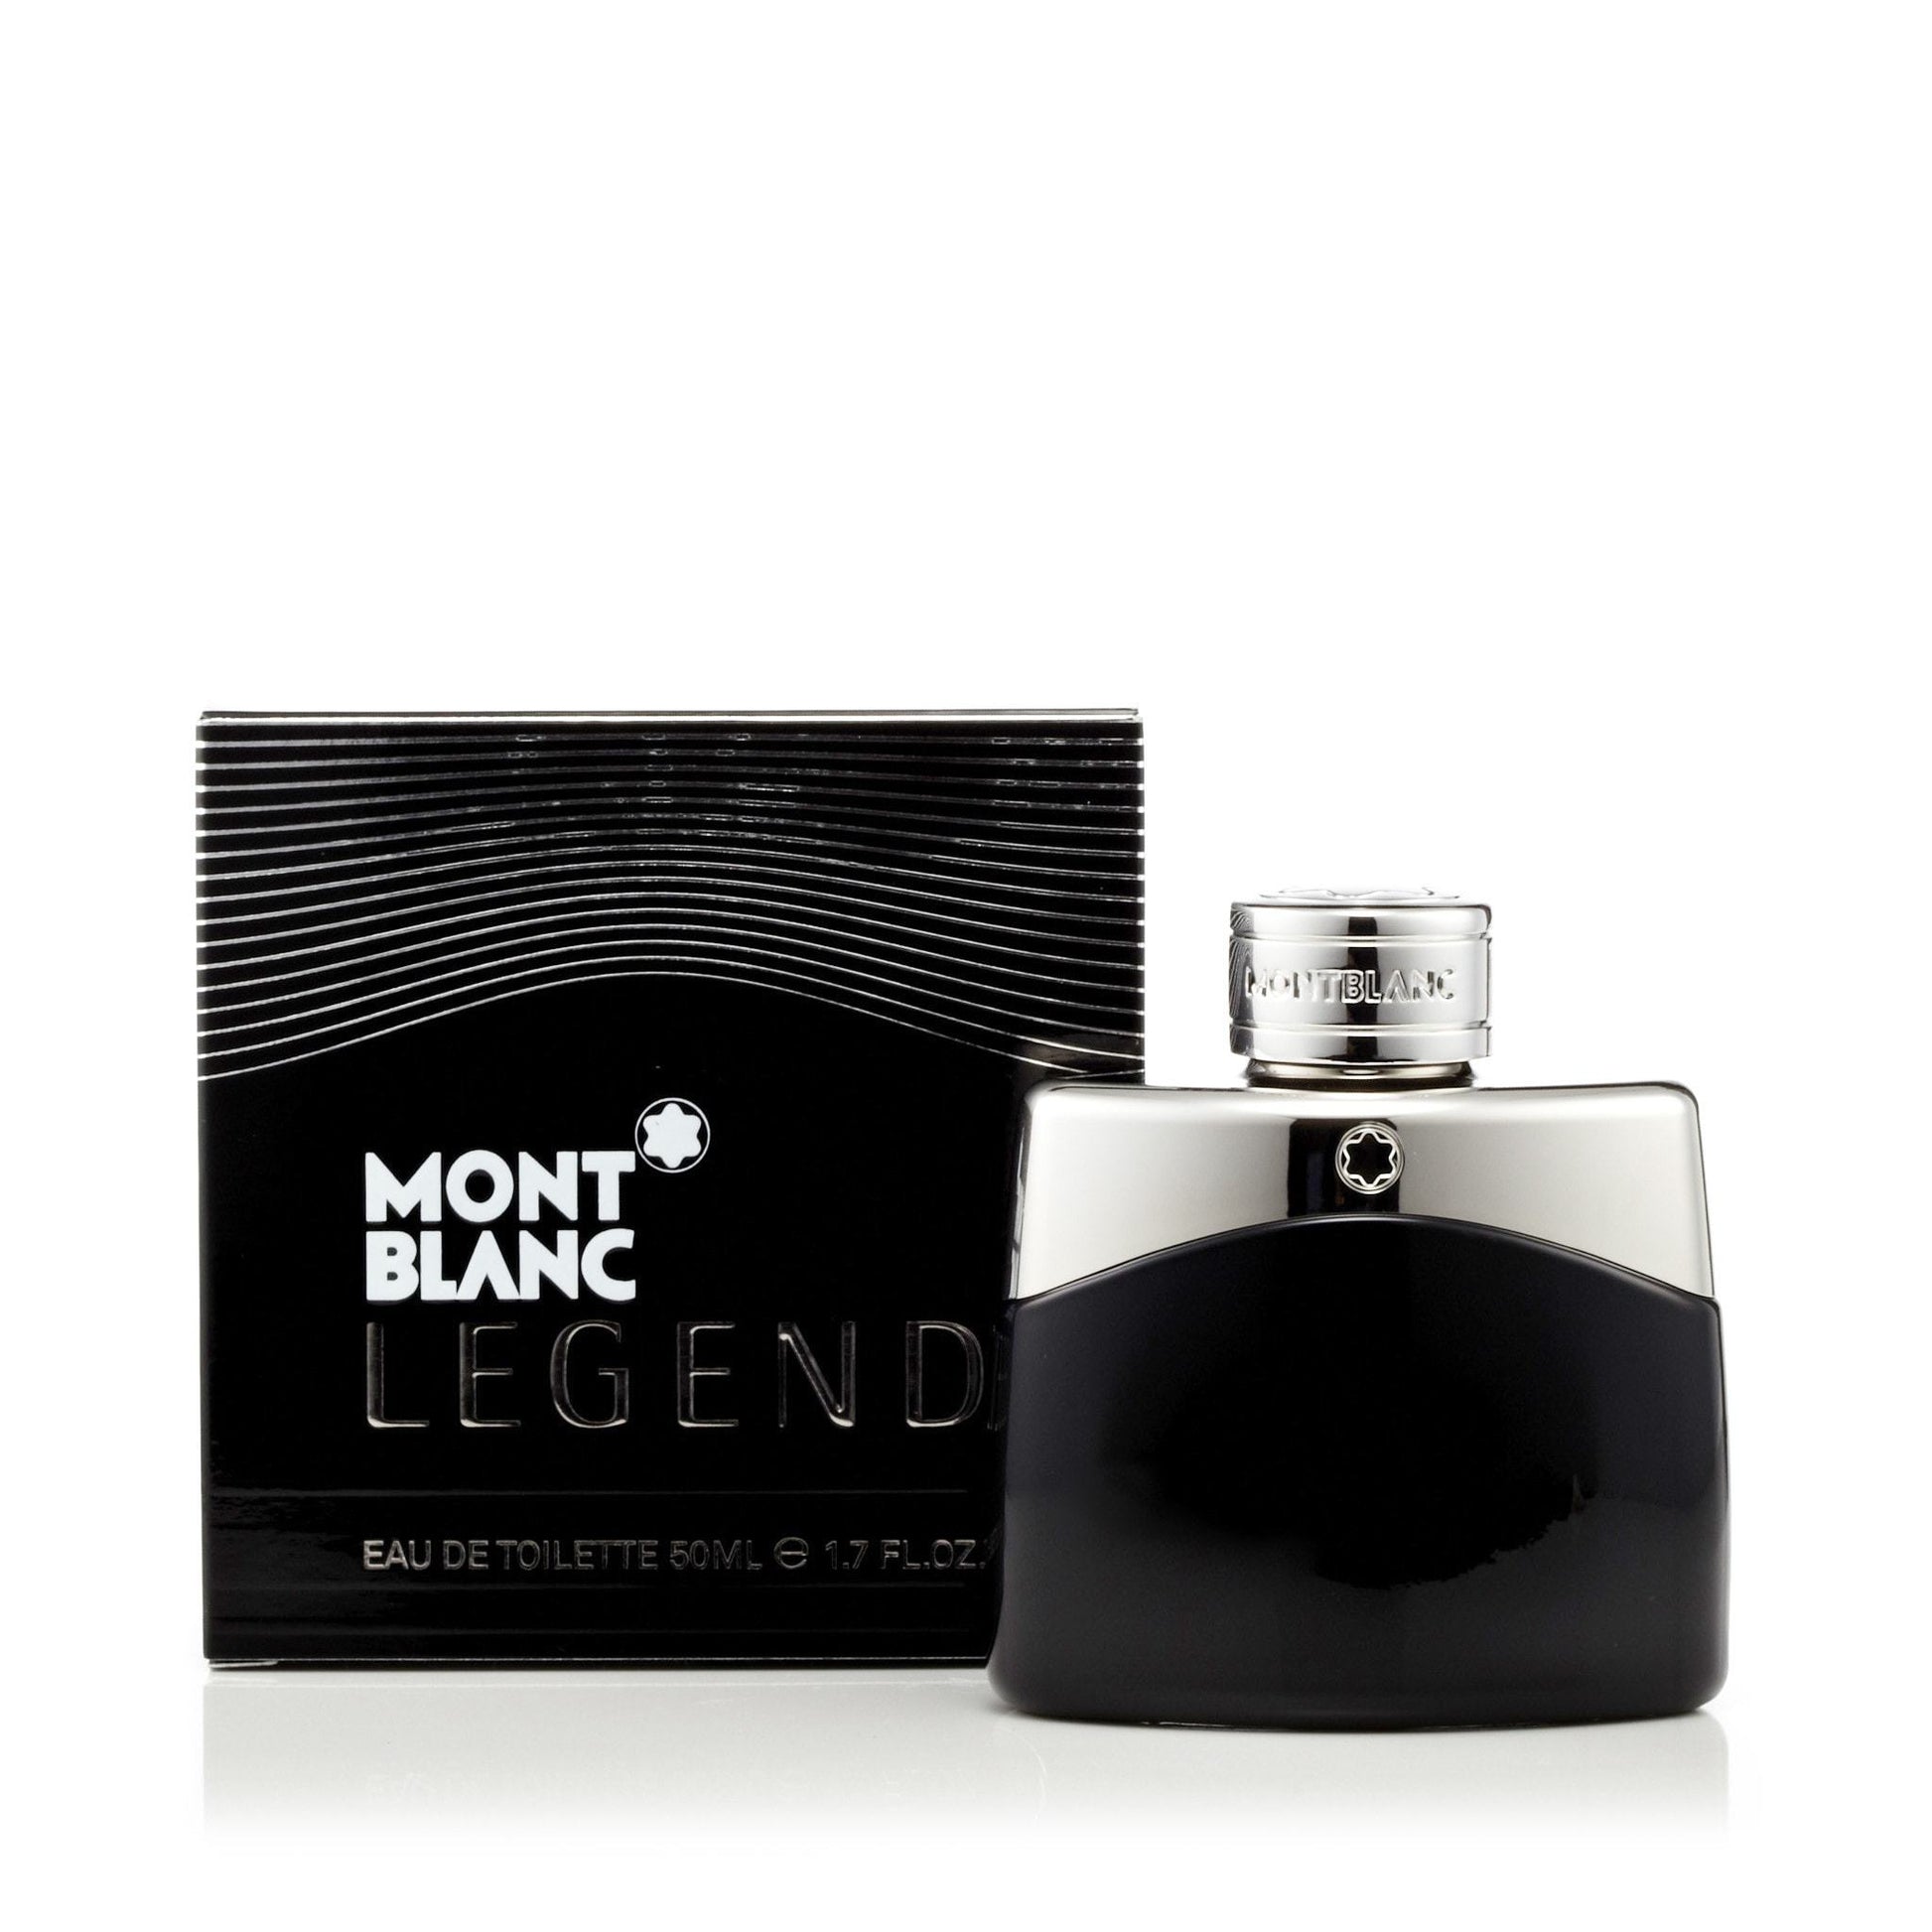 Legend Eau de Toilette Spray for Men by Mont Blanc, Product image 8